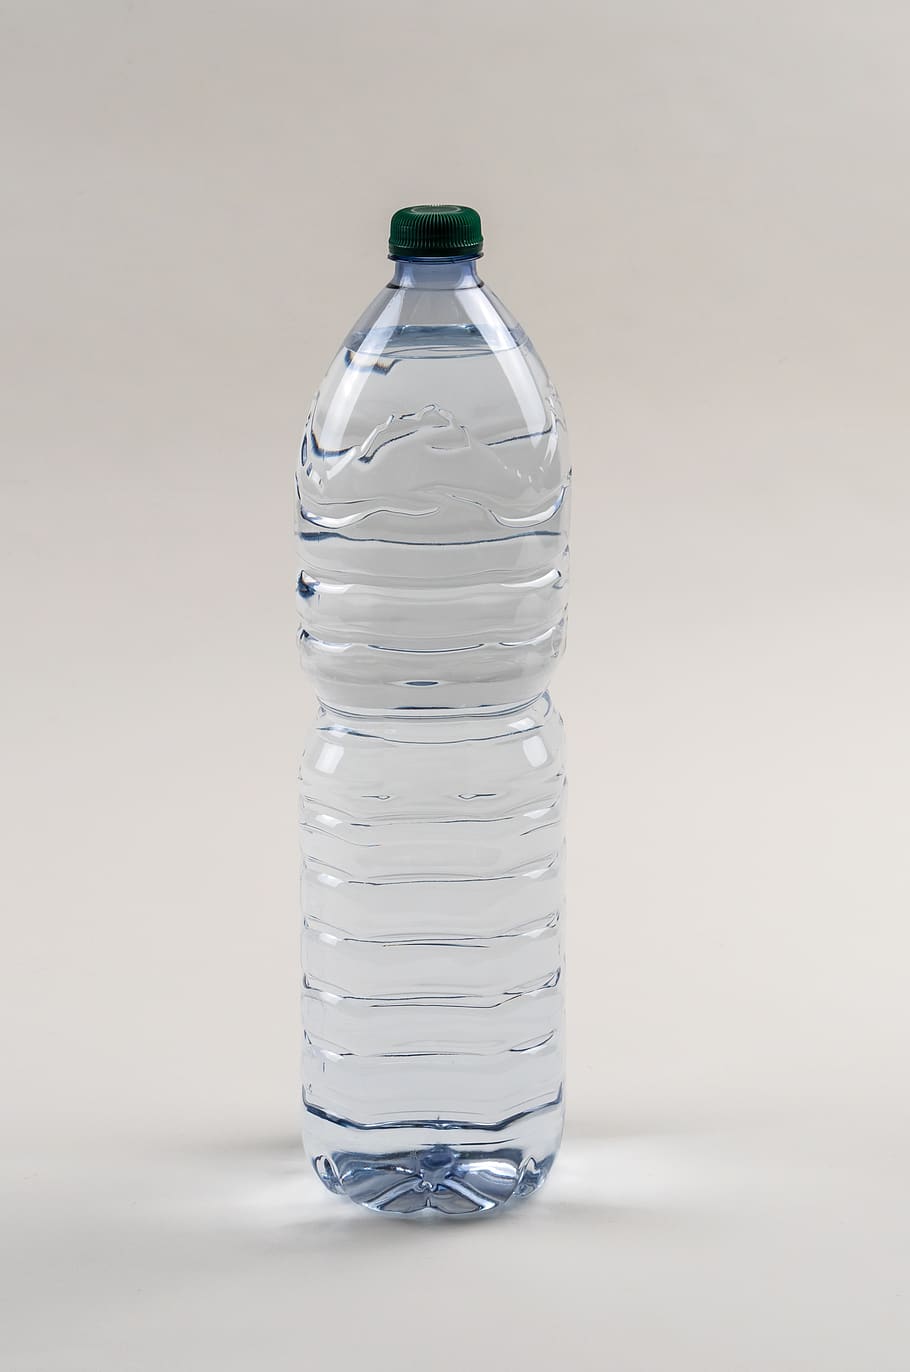 agua, maqueta, línea, botella, maqueta neutral, barra, transparente, plástico, refresco, tiro del estudio